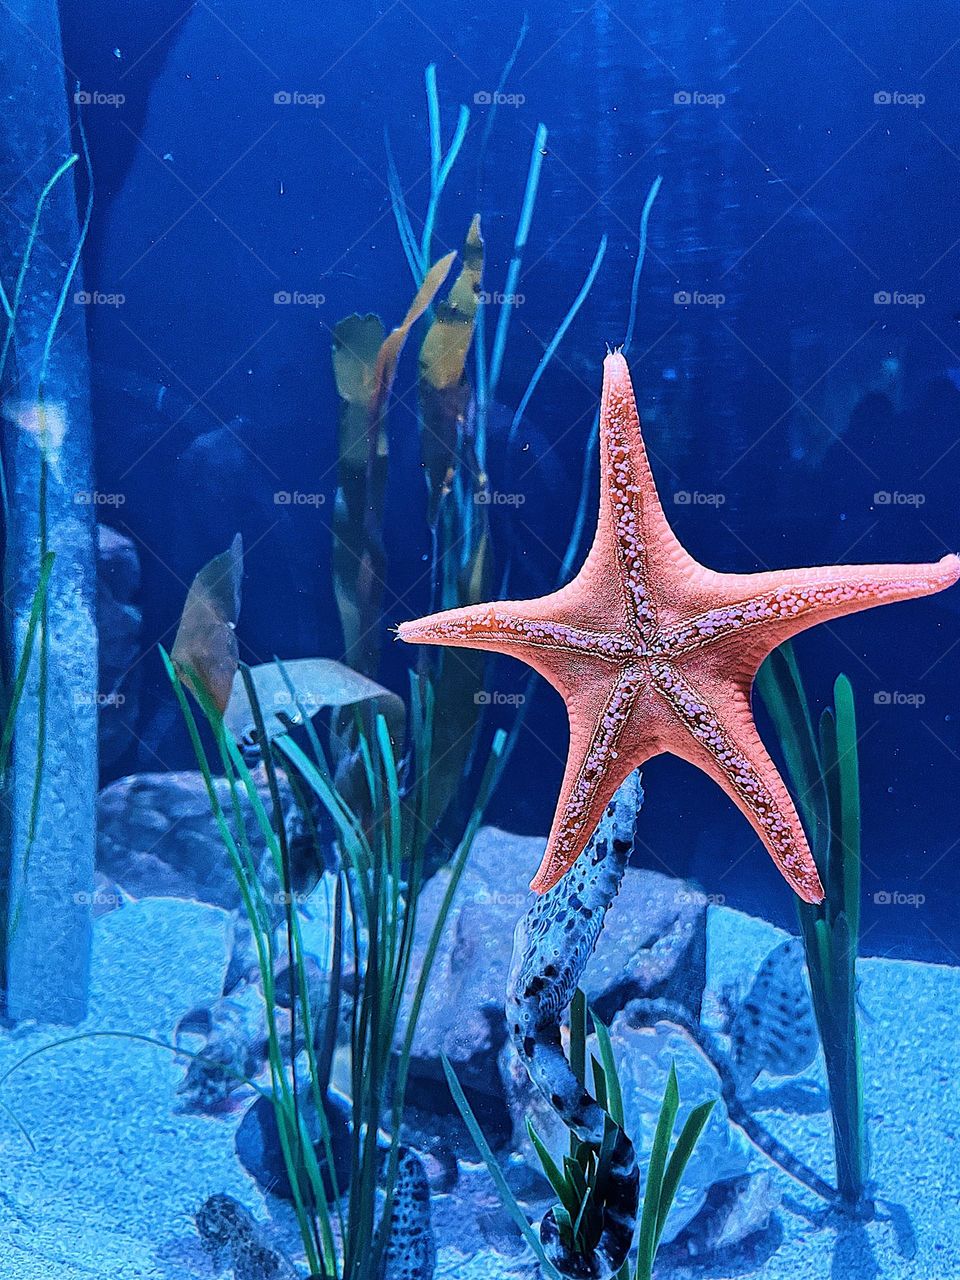 Portrait of a starfish, starfish in an aquarium, bright pink starfish, under the water in a tank, Newport Aquarium, tanks at the aquarium 